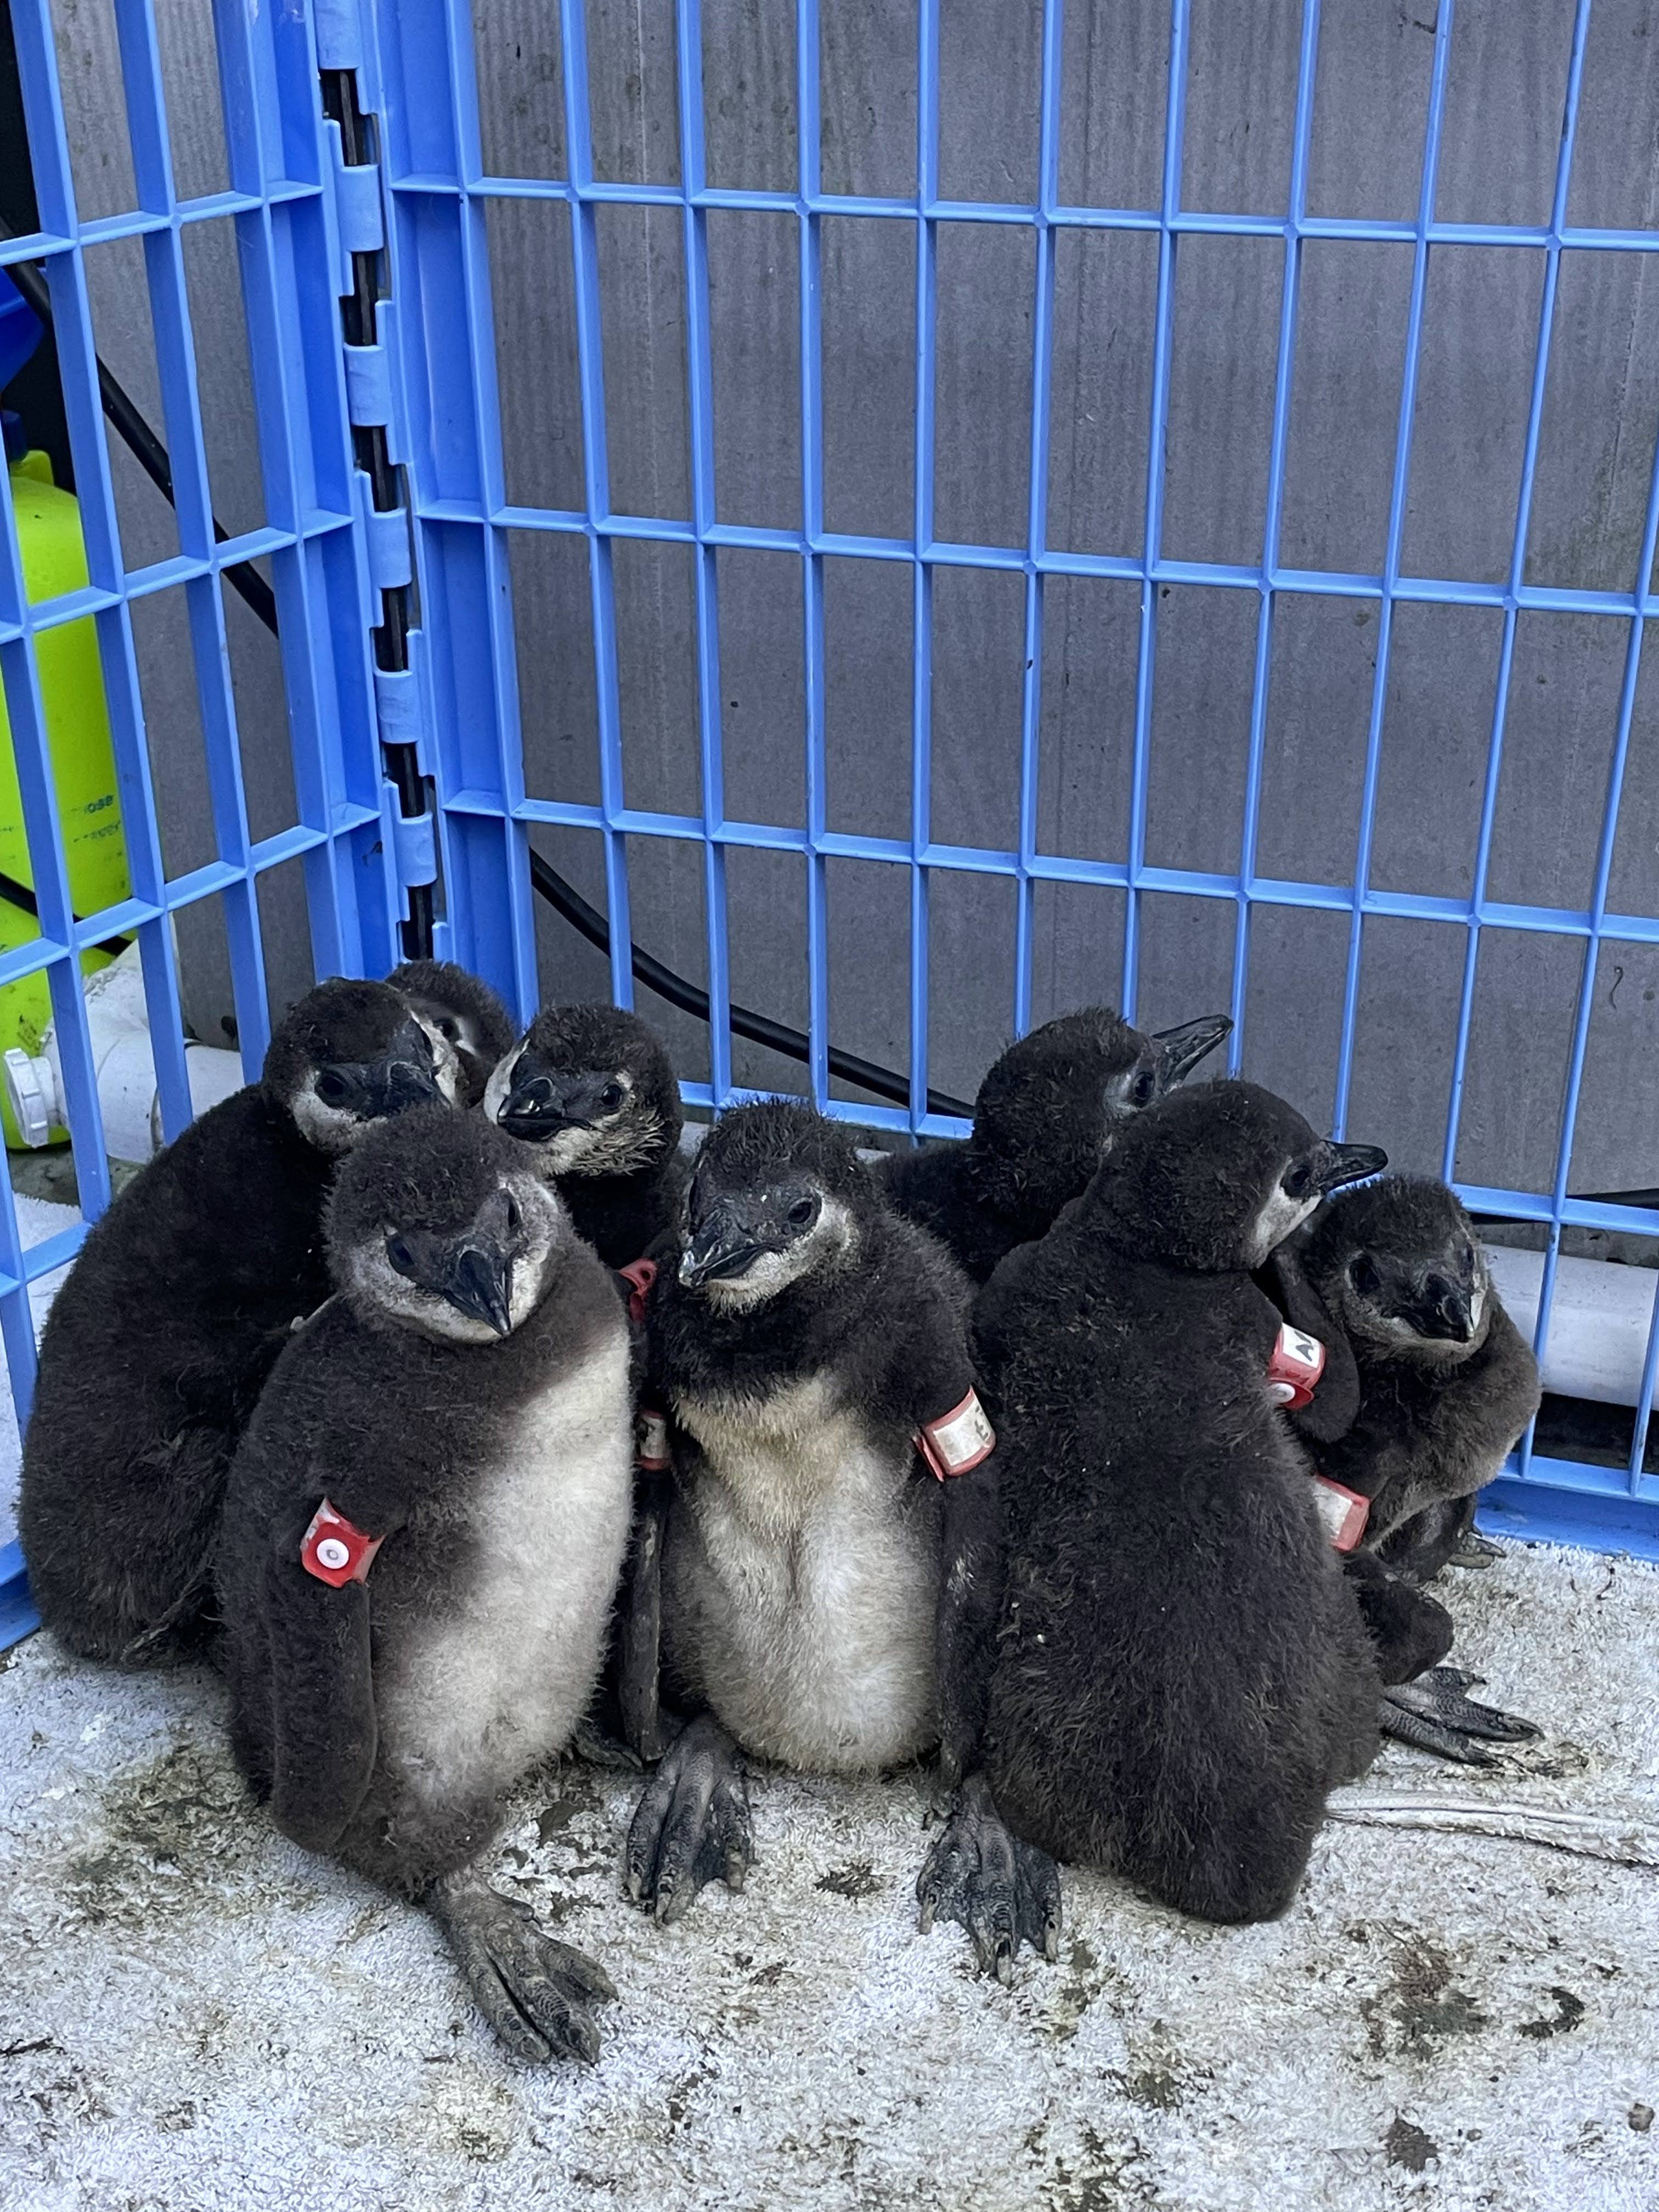 rescued penguins